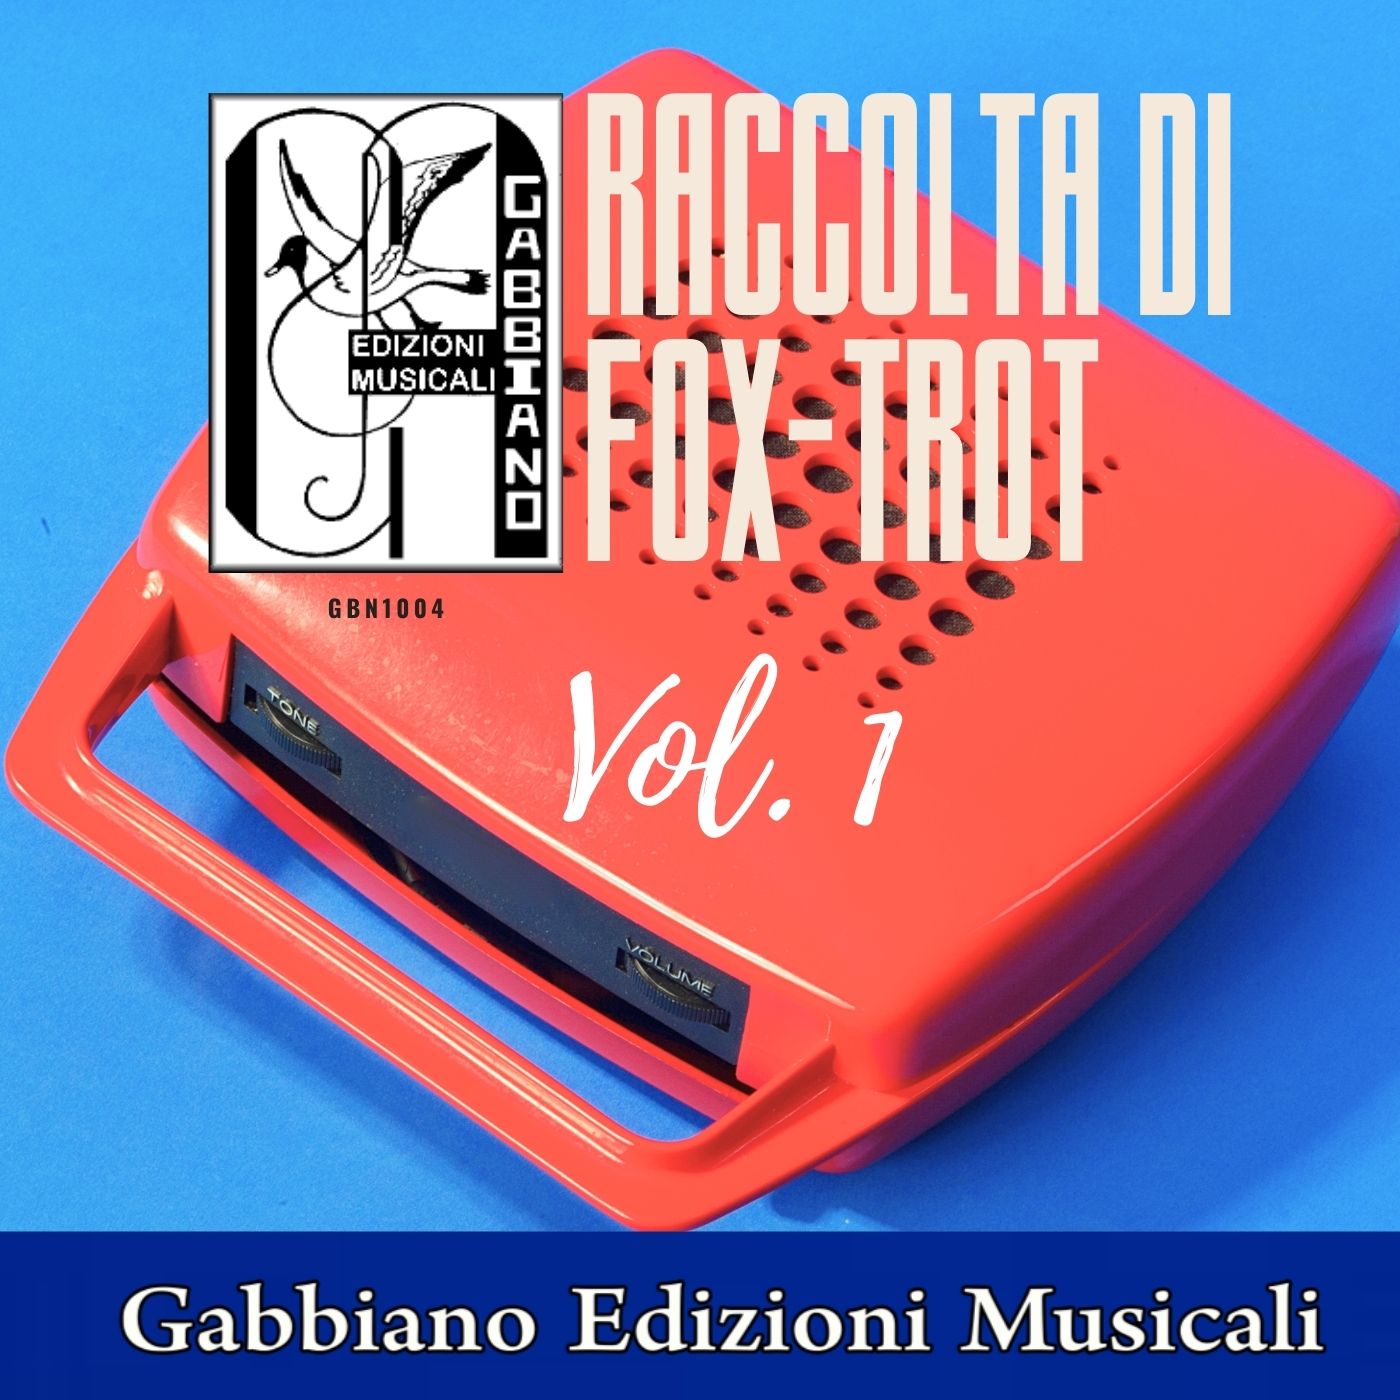 GBN153CD/CL - RACCOLTA DI FOX-TROT  Vol. 1 - Volume 53